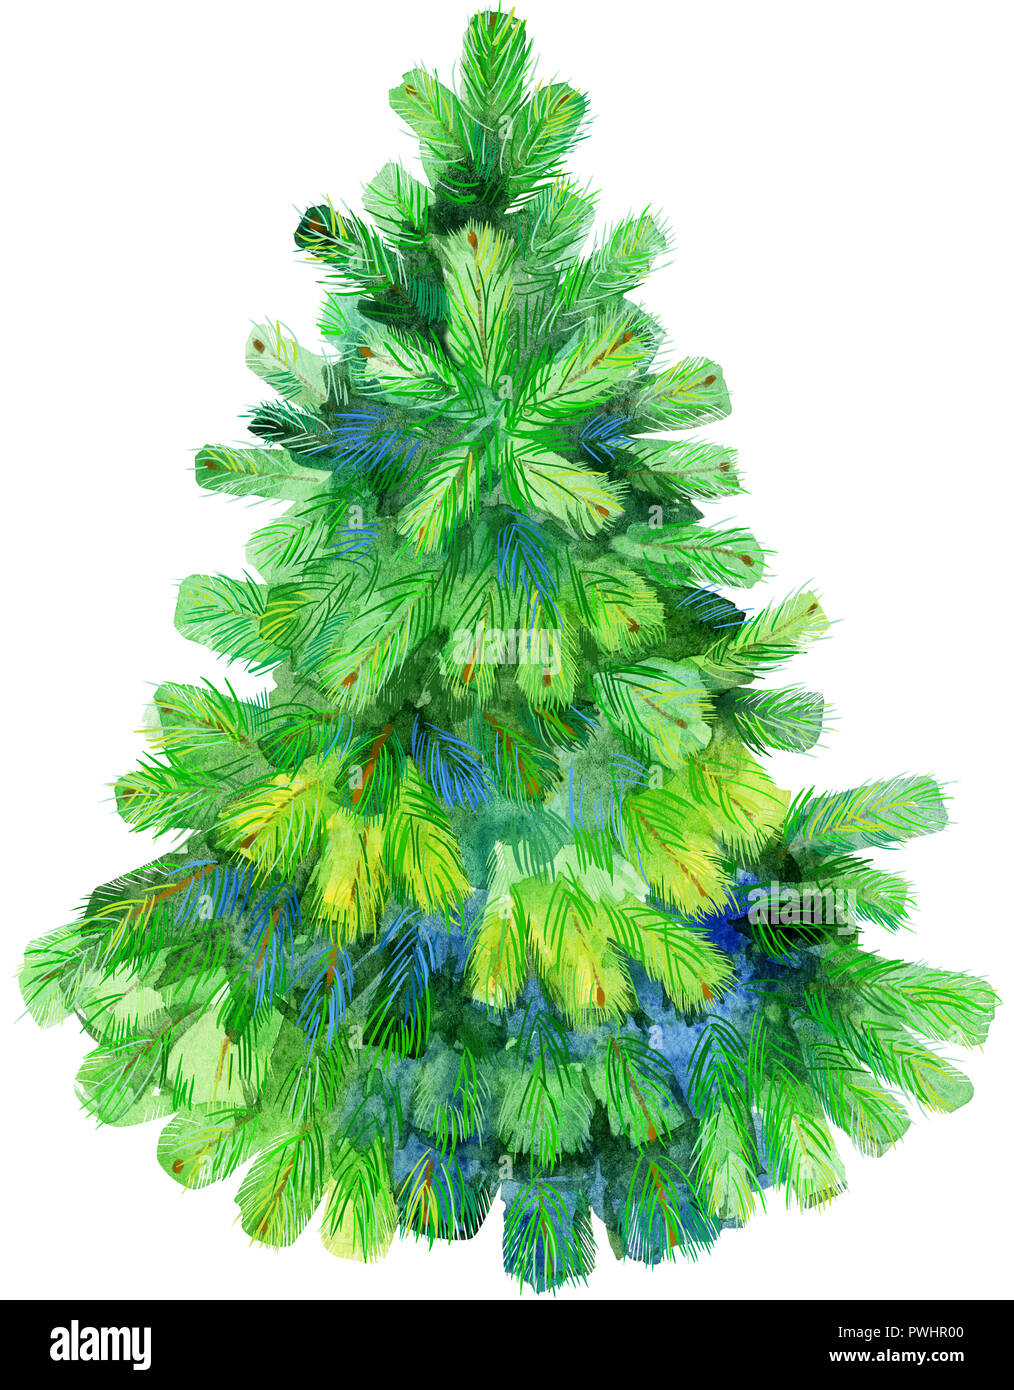 Aquarelle arbre de Noël. Pine Tree illustration isolé Banque D'Images